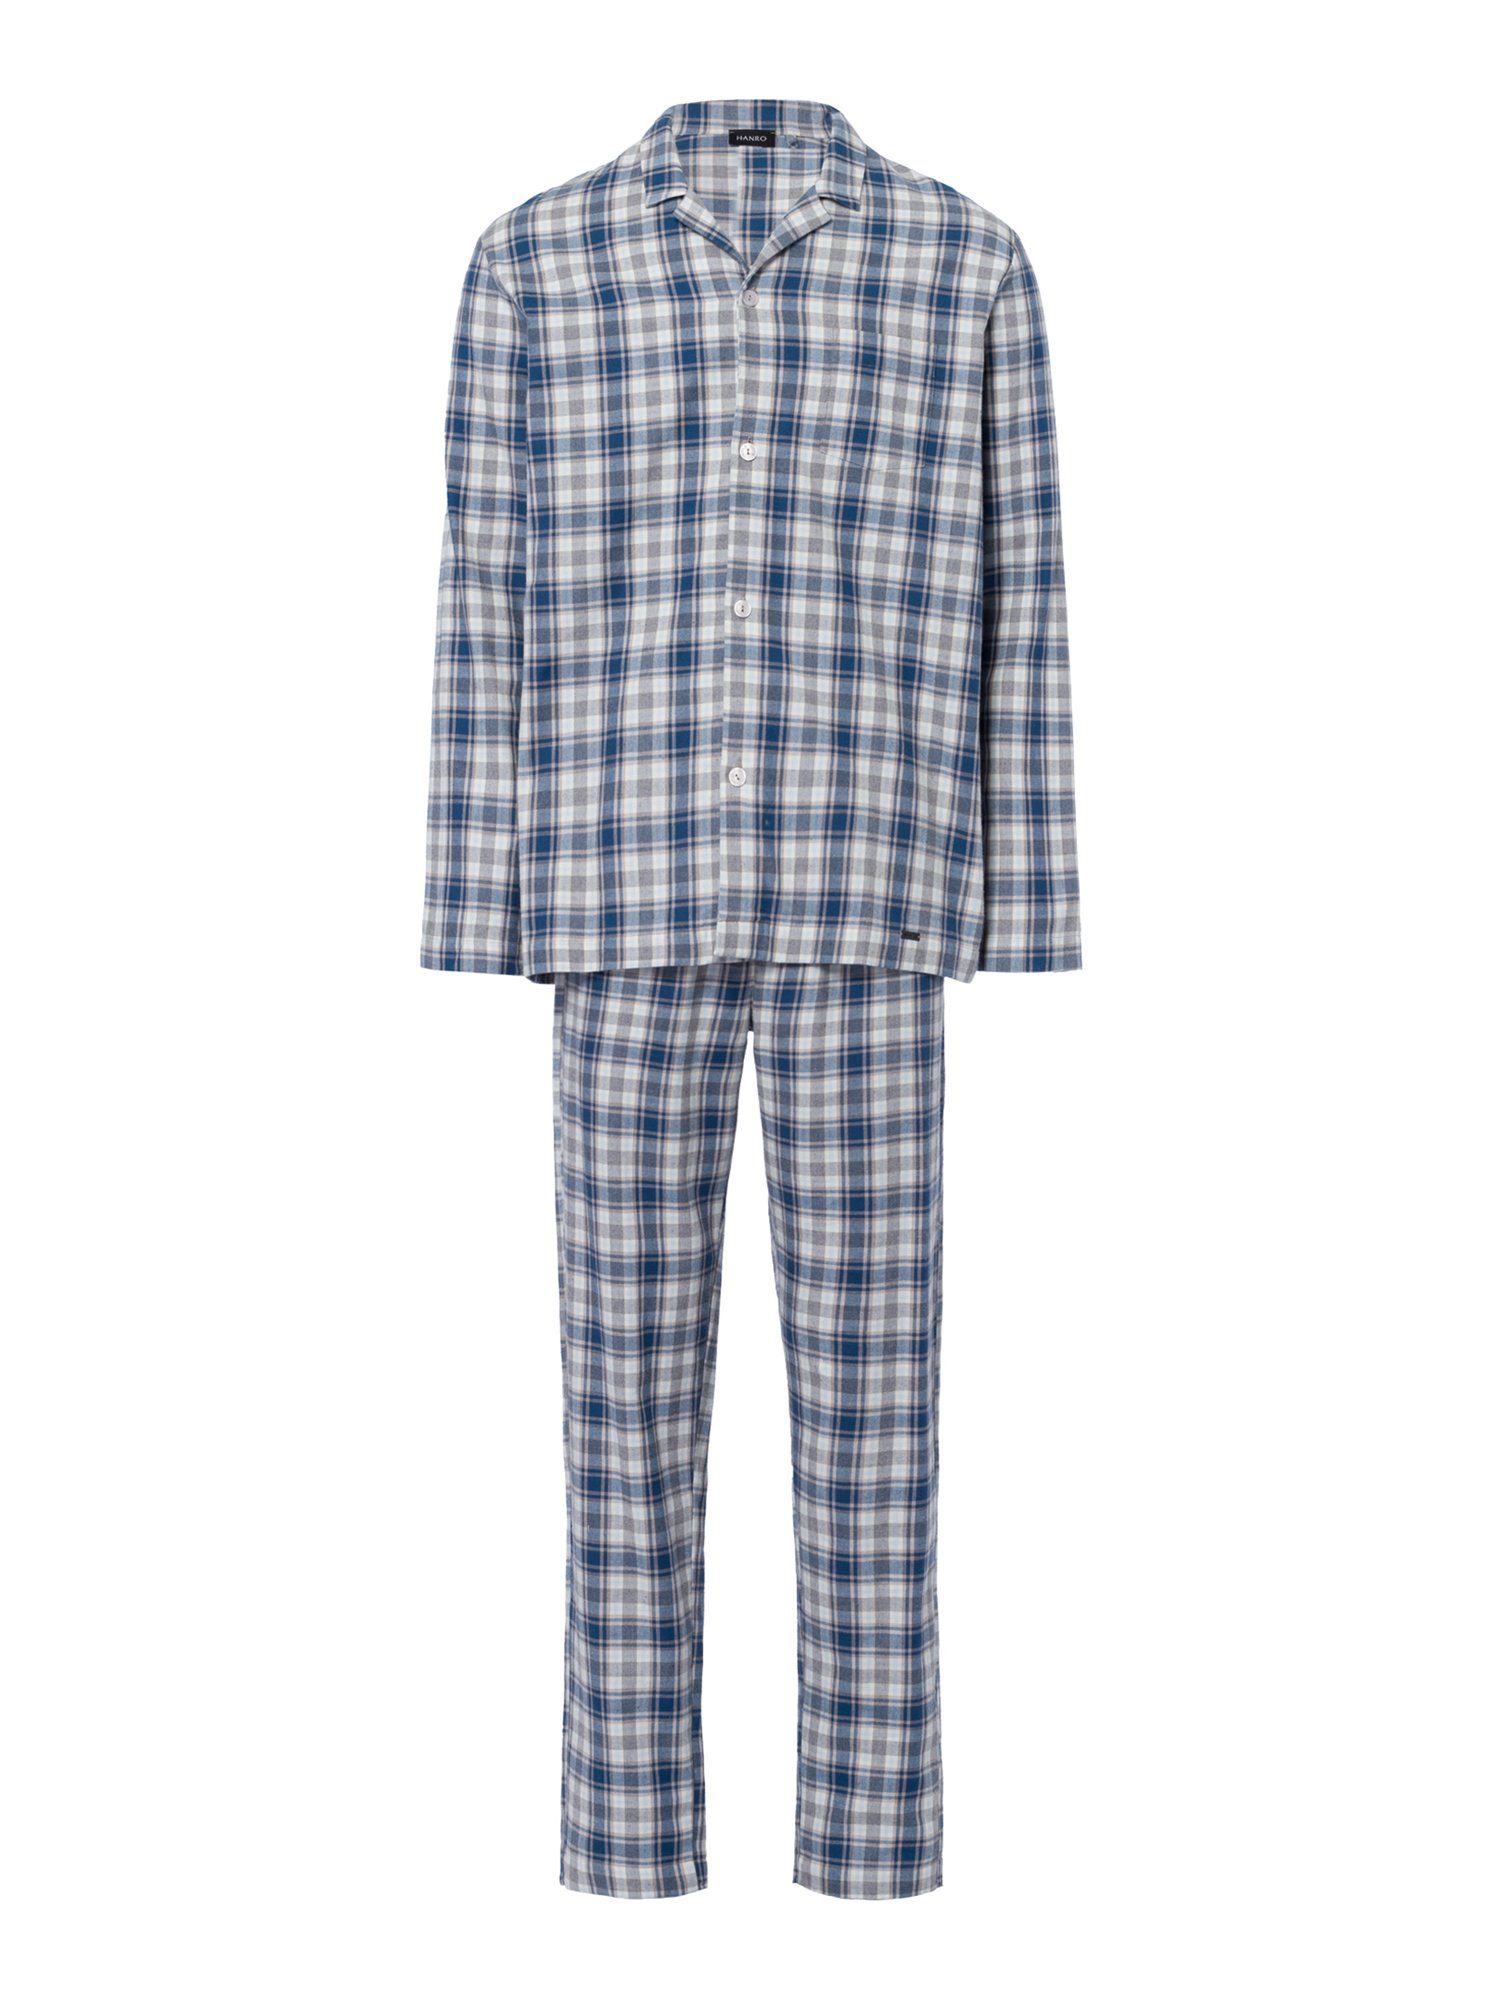 Hanro check Comfort Cozy cozy Pyjama